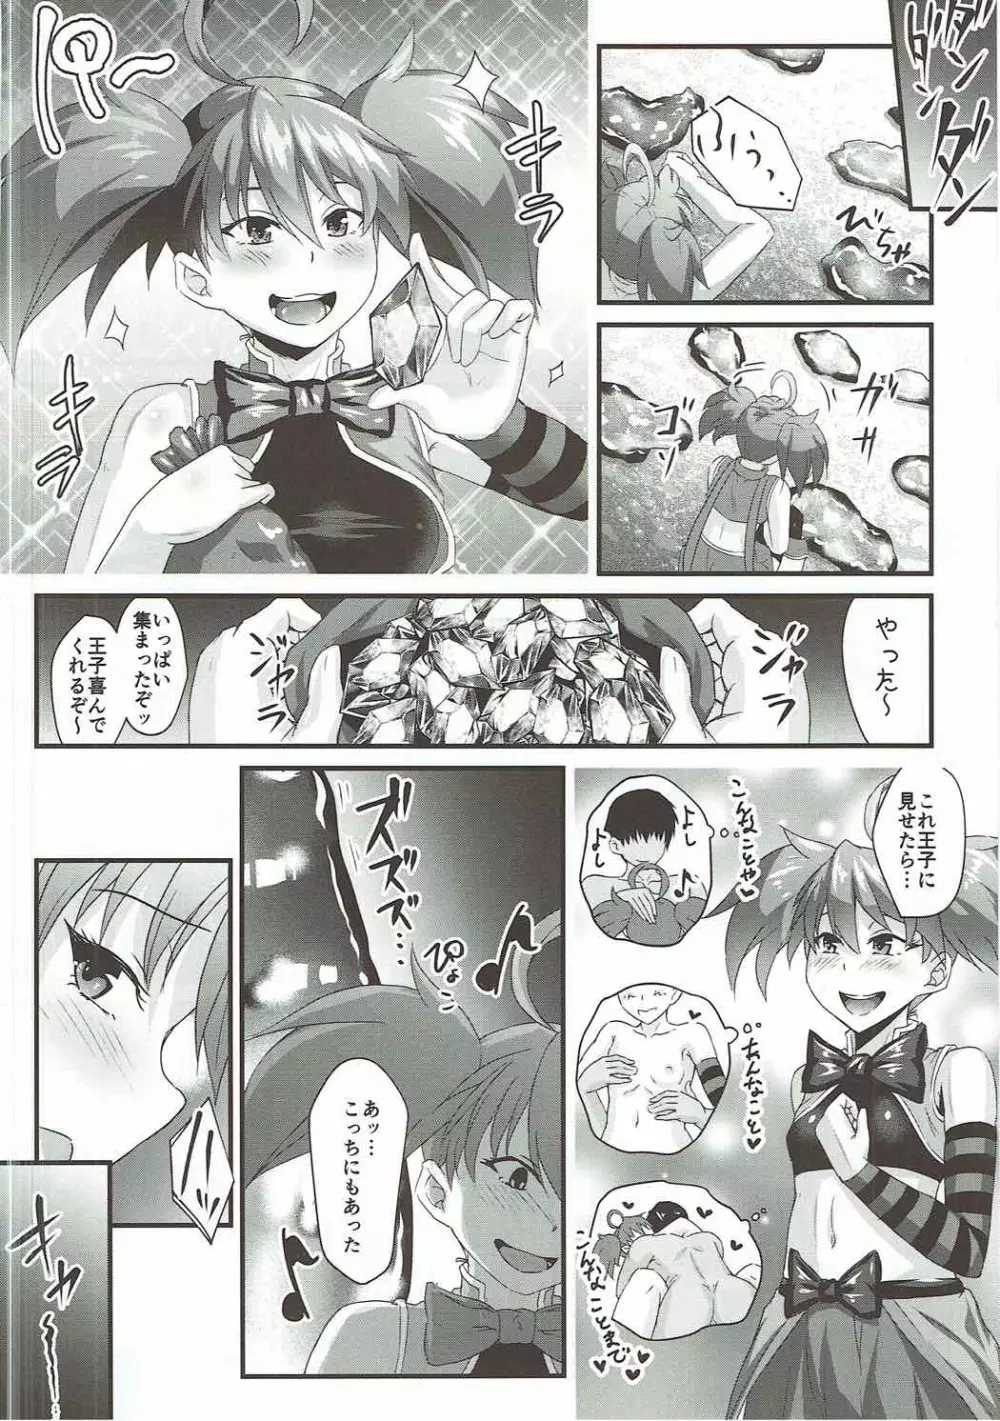 ディーナちゃん魔水晶に行く!!Part1 - page4